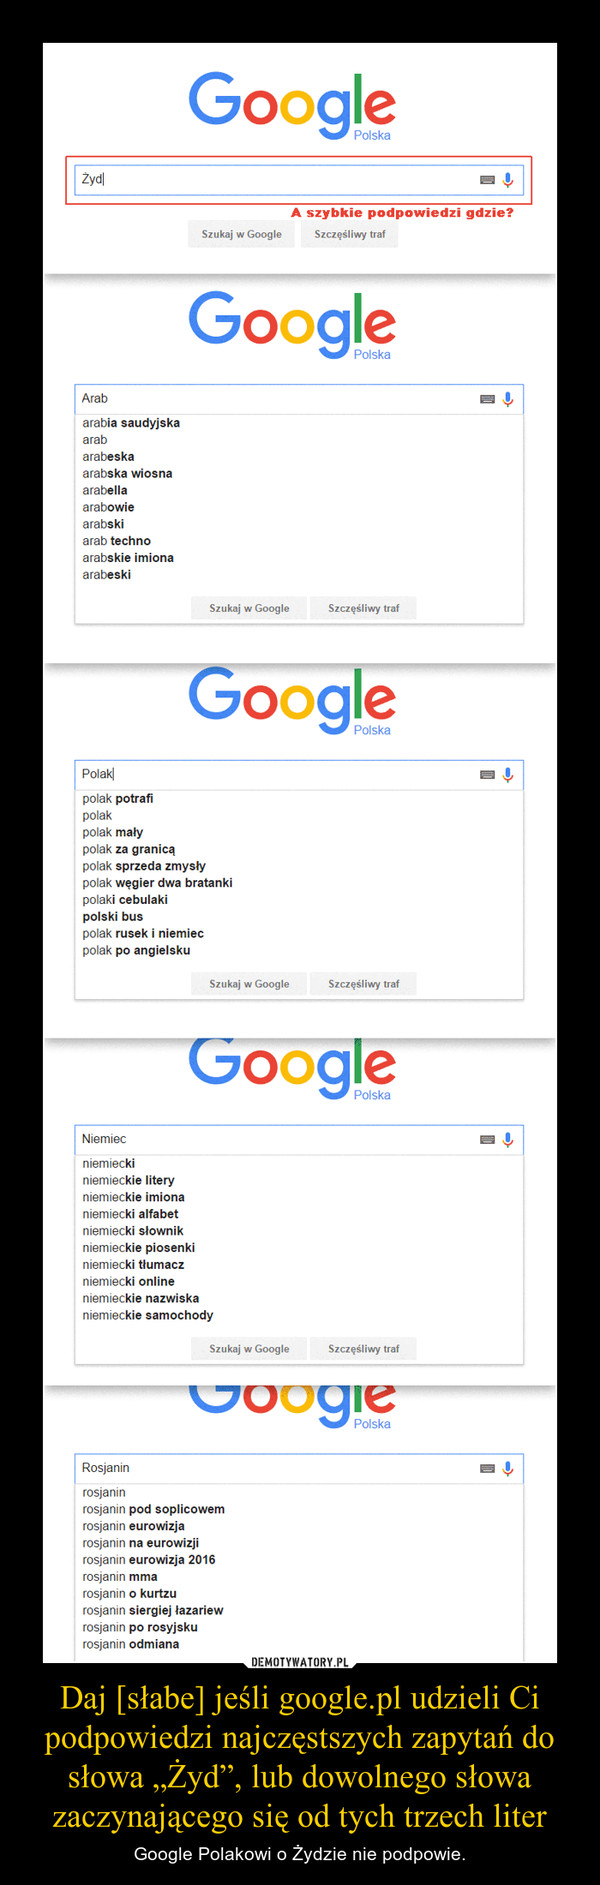 Daj [słabe] jeśli google.pl udzieli Ci podpowiedzi najczęstszych zapytań do słowa „Żyd”, lub dowolnego słowa zaczynającego się od tych trzech liter